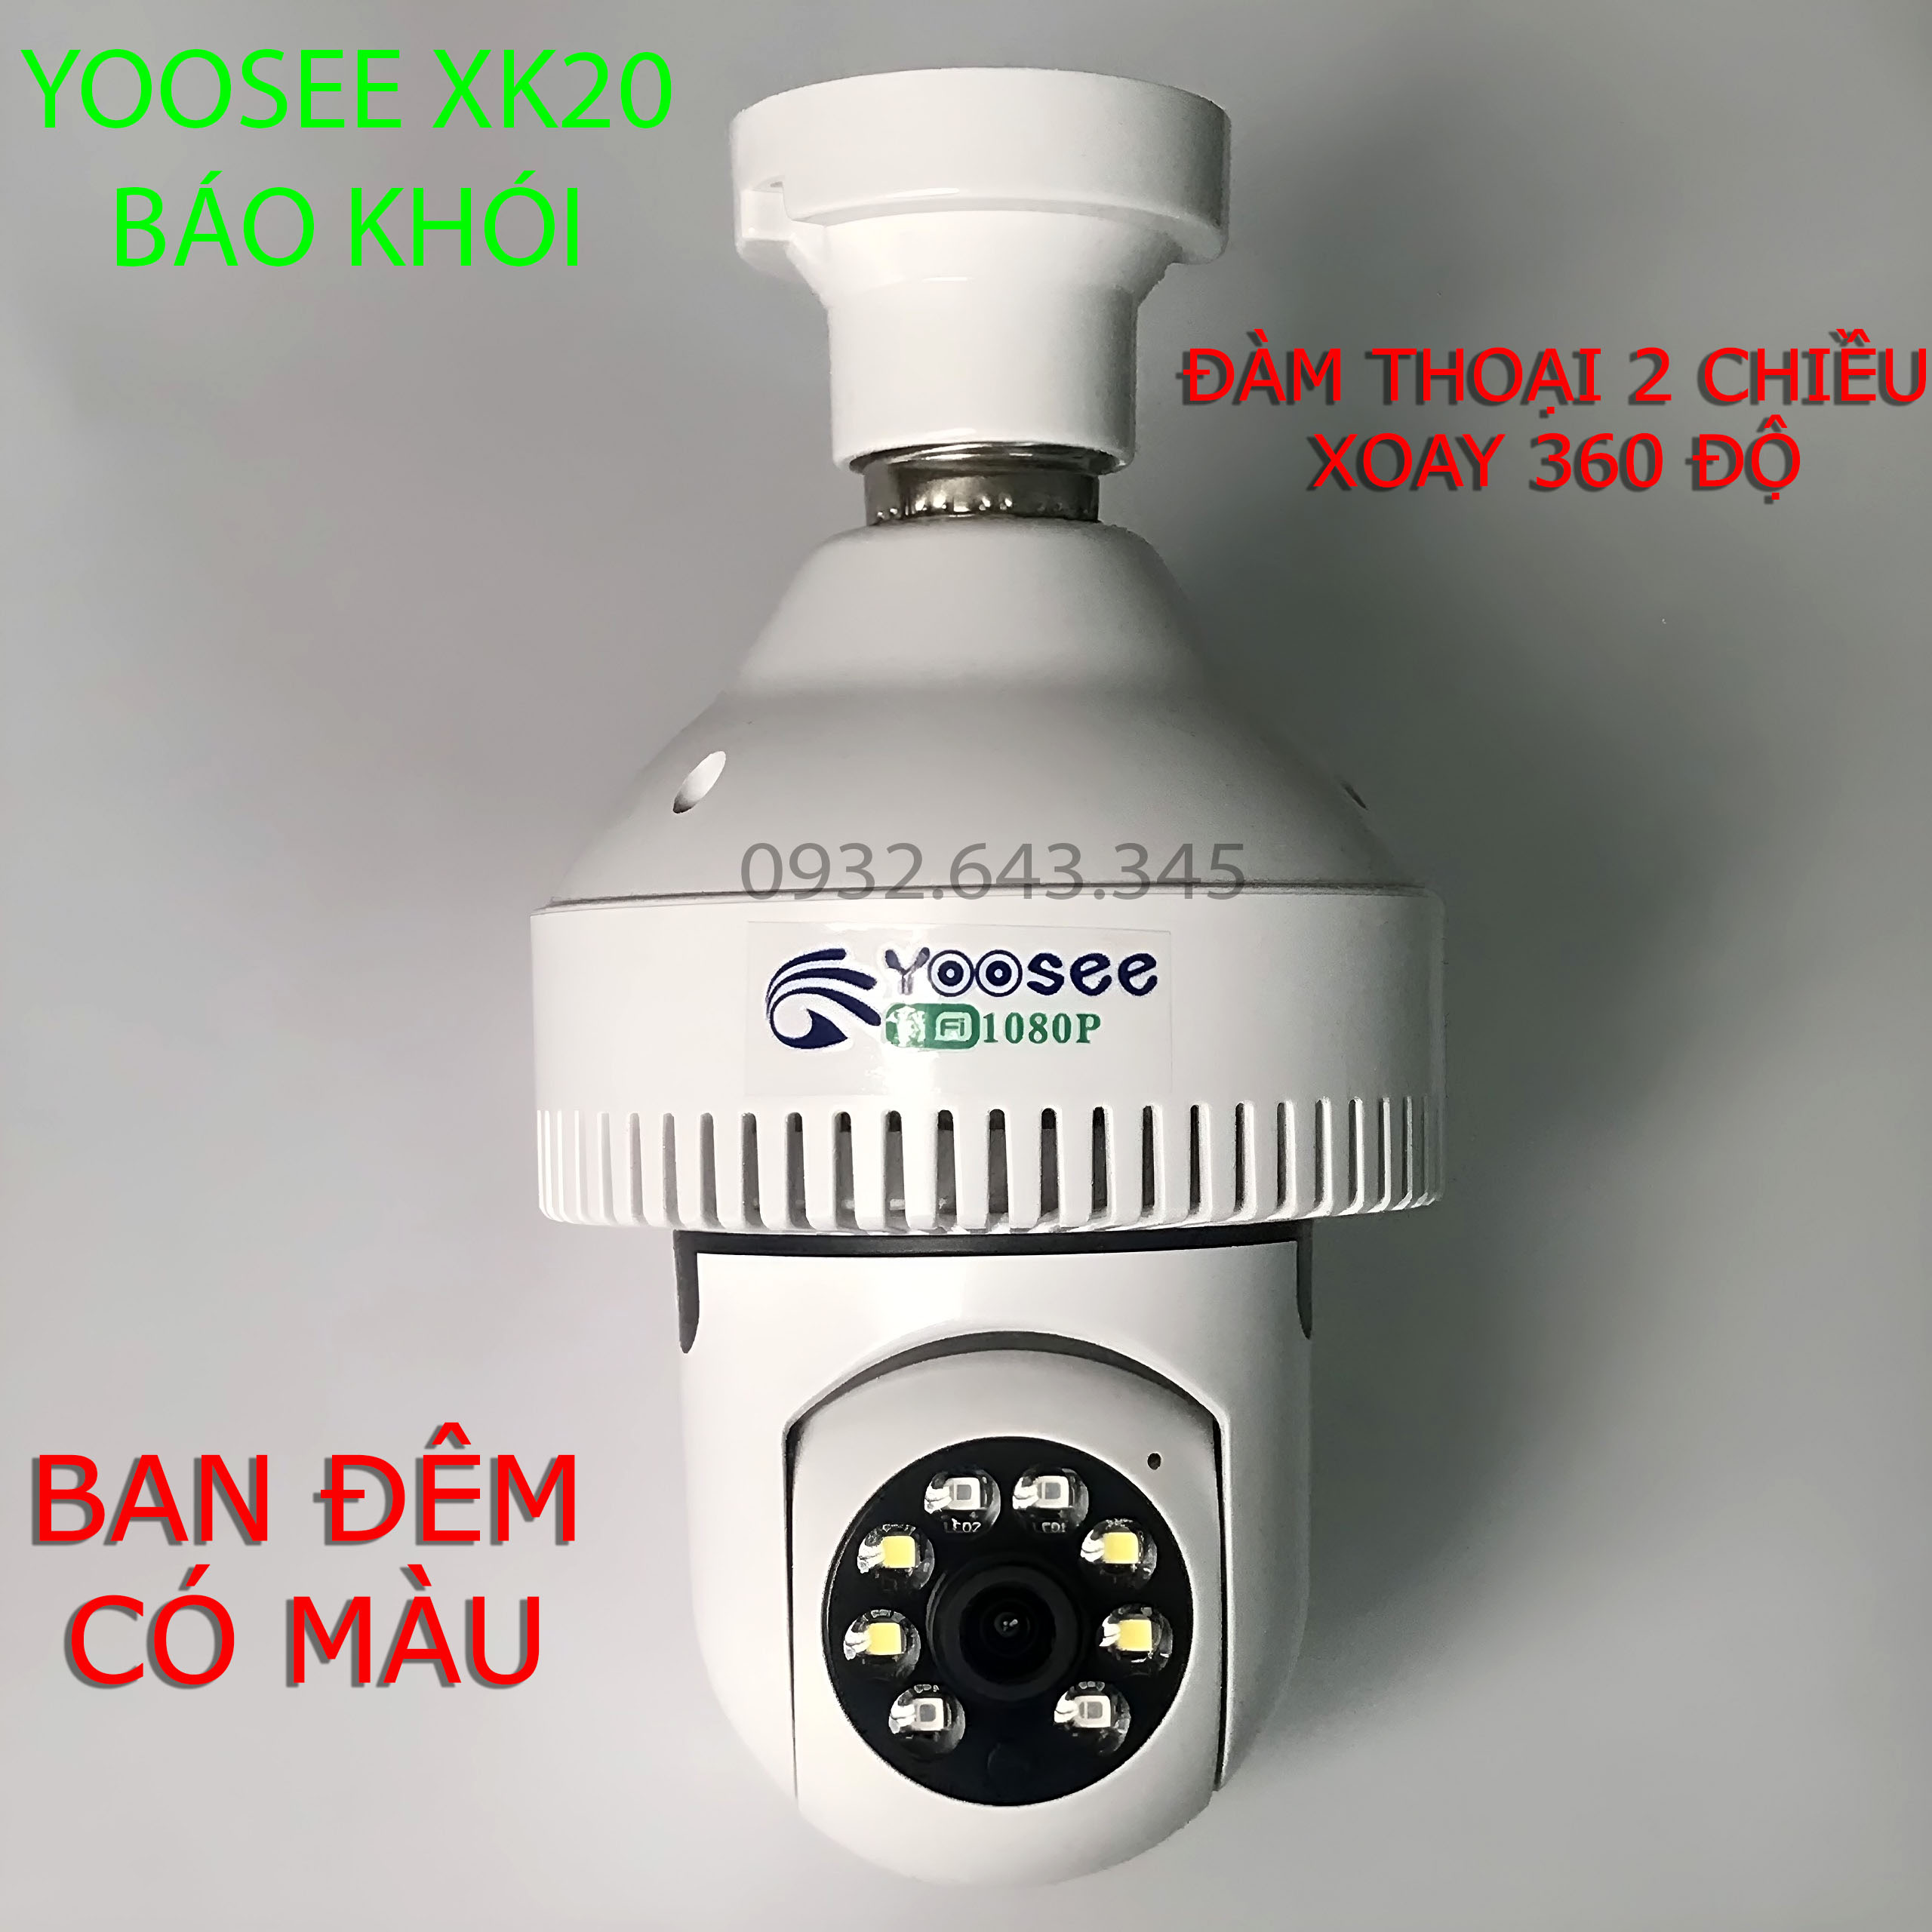 Hình ảnh Camera WiFi Bóng Đèn Tích Hợp Báo Khói Yoosee XK20 Full HD 1080P - Xoay 360 độ, Ban đêm có màu - Hàng Chính Hãng